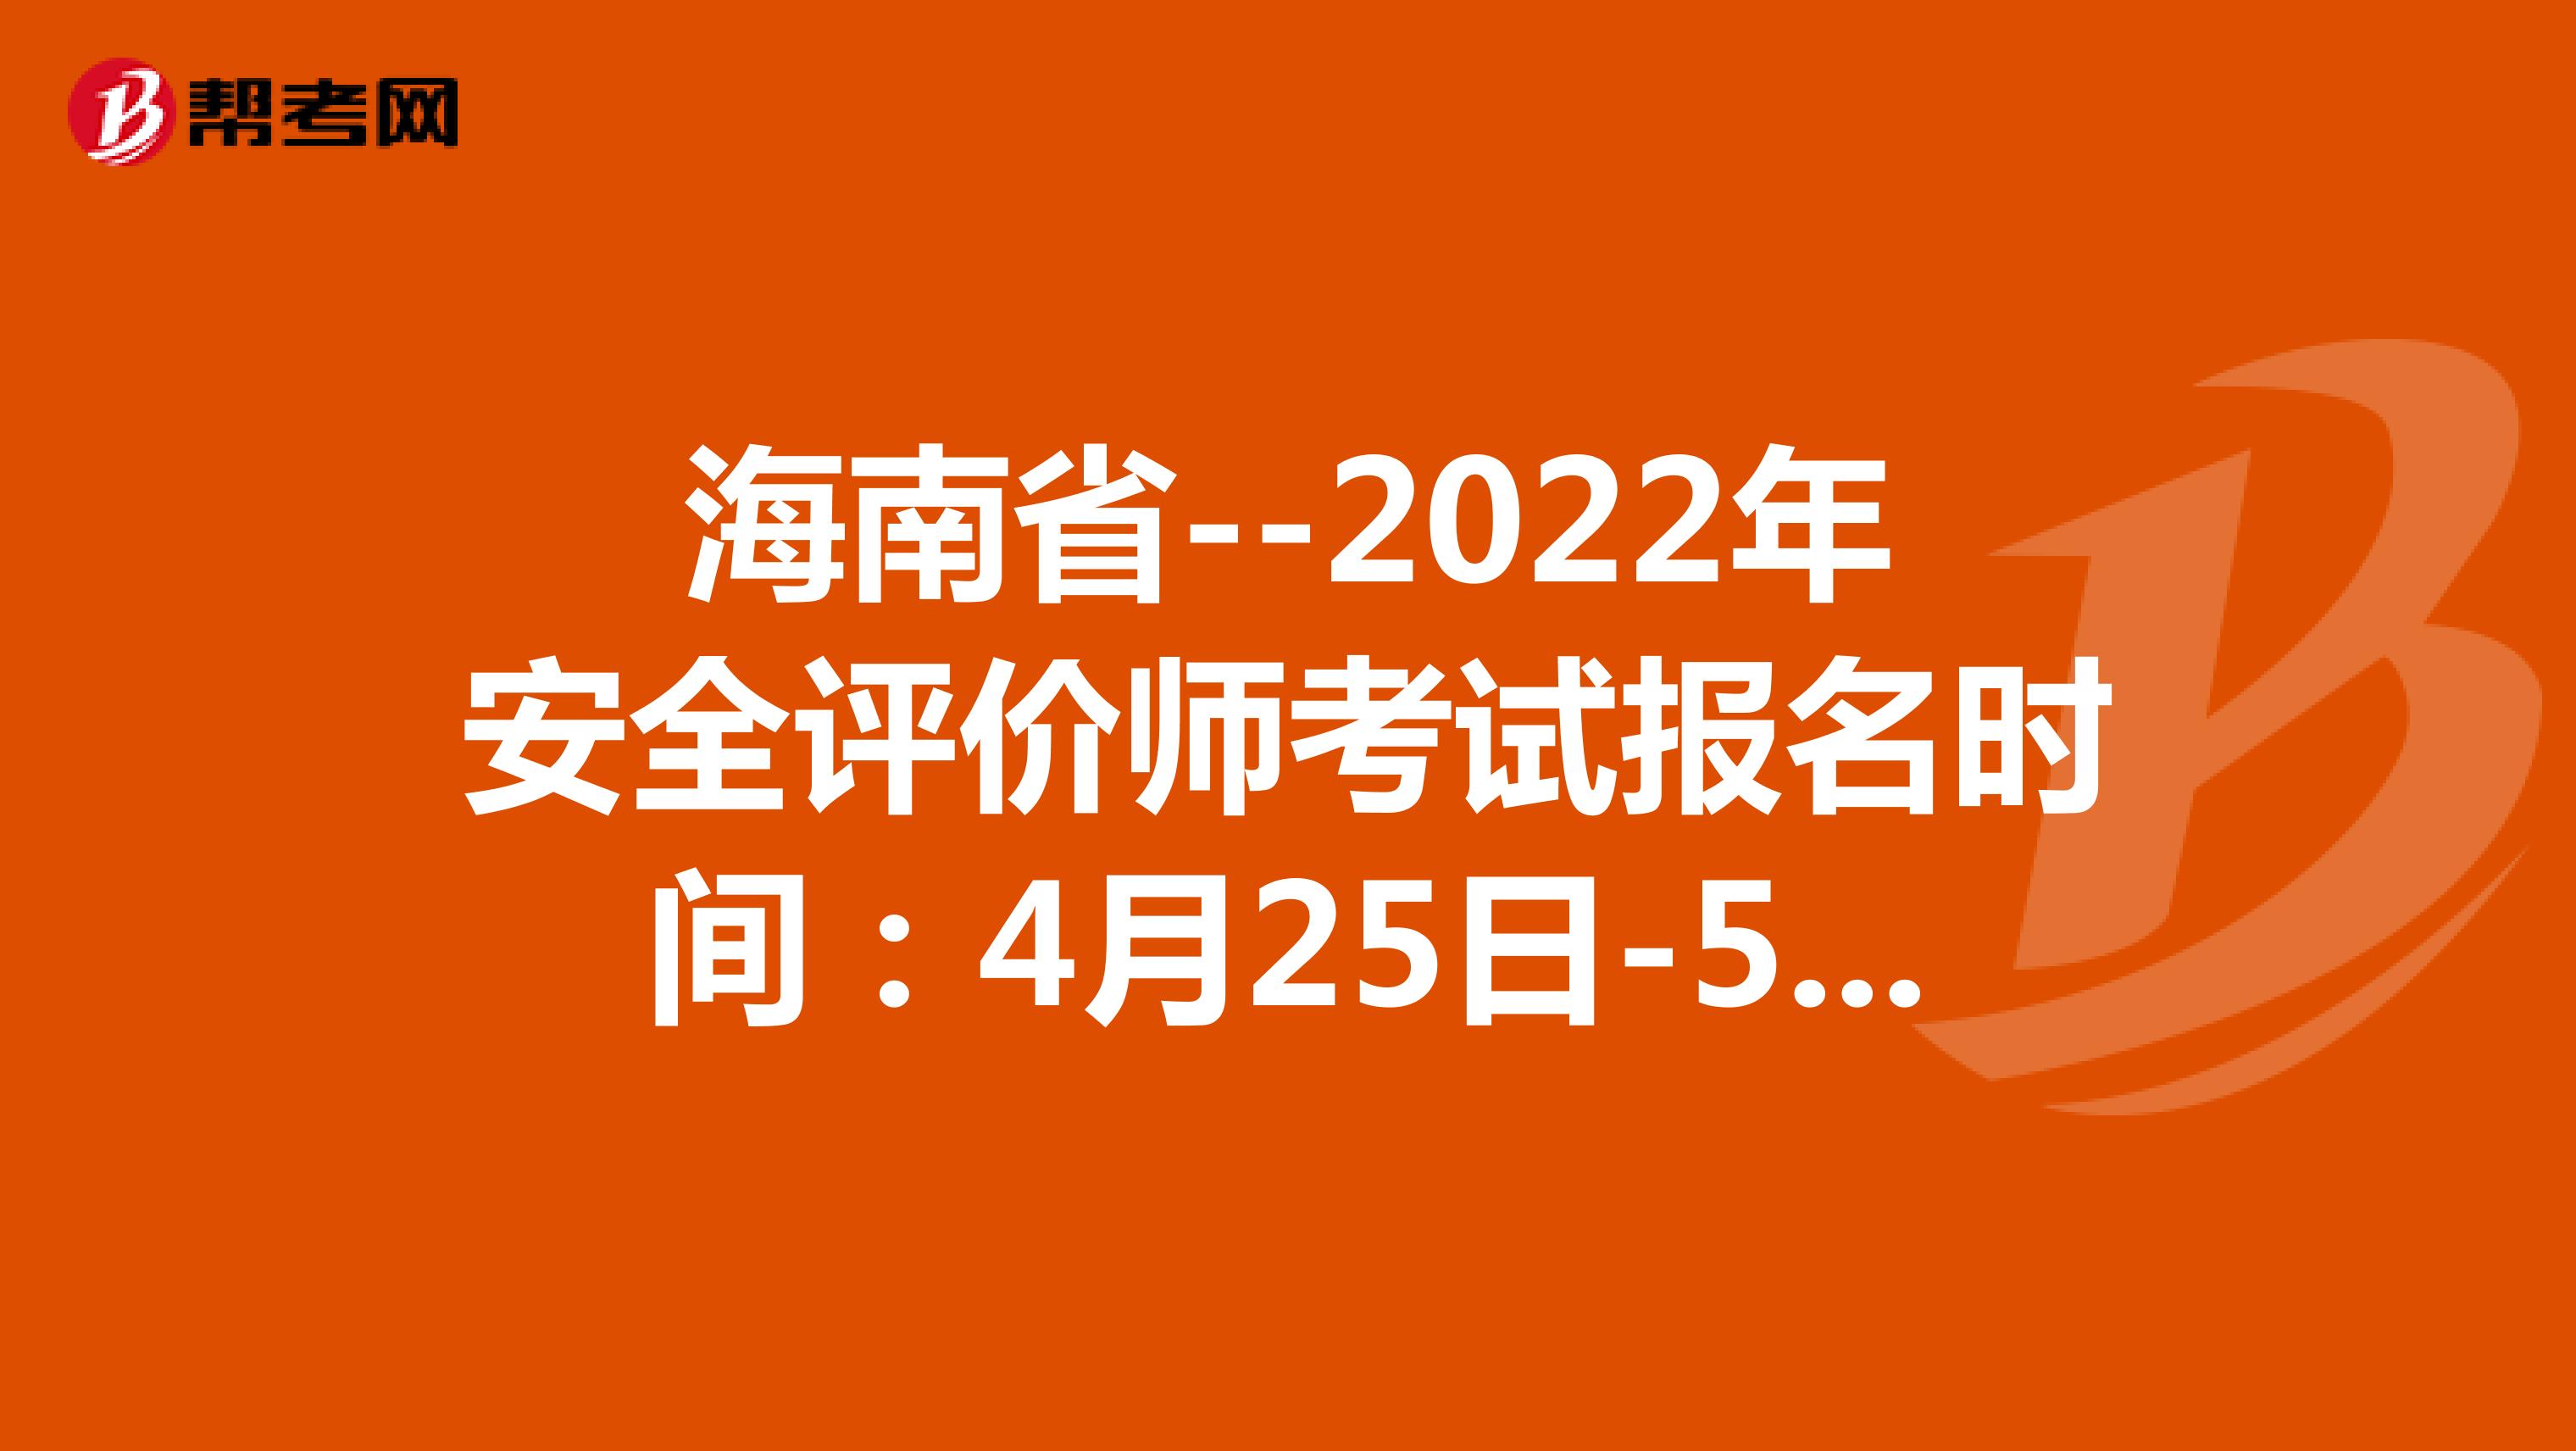 海南省--2022年安全评价师考试报名时间：4月25日-5月12日